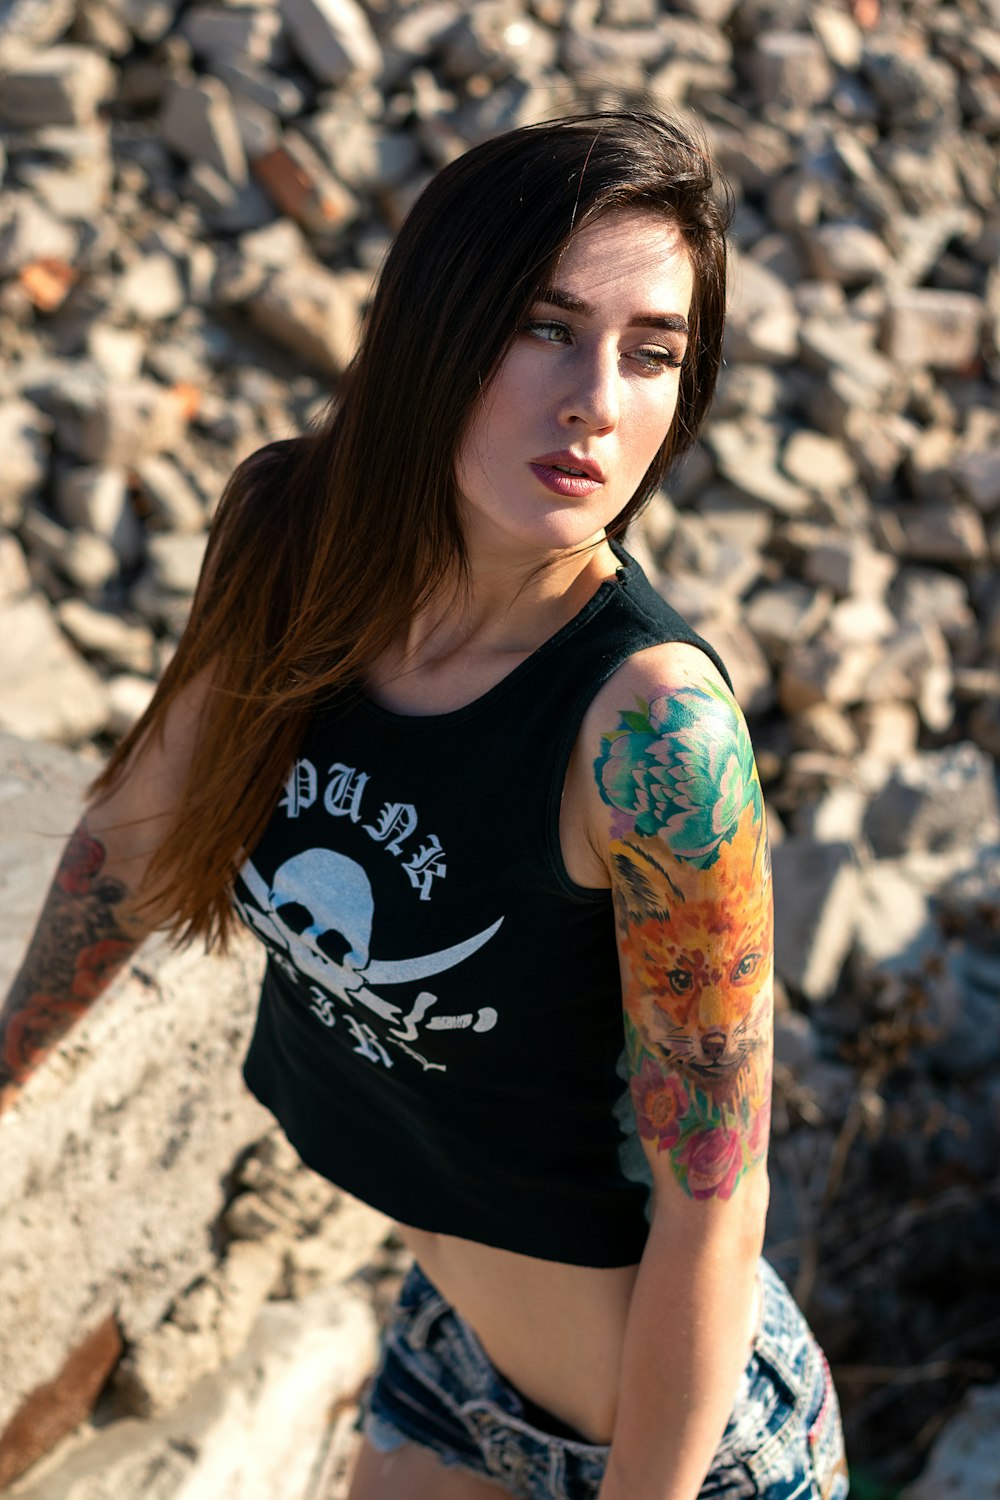 Más de 500 imágenes de mujeres tatuadas | Descargar imágenes gratis en  Unsplash